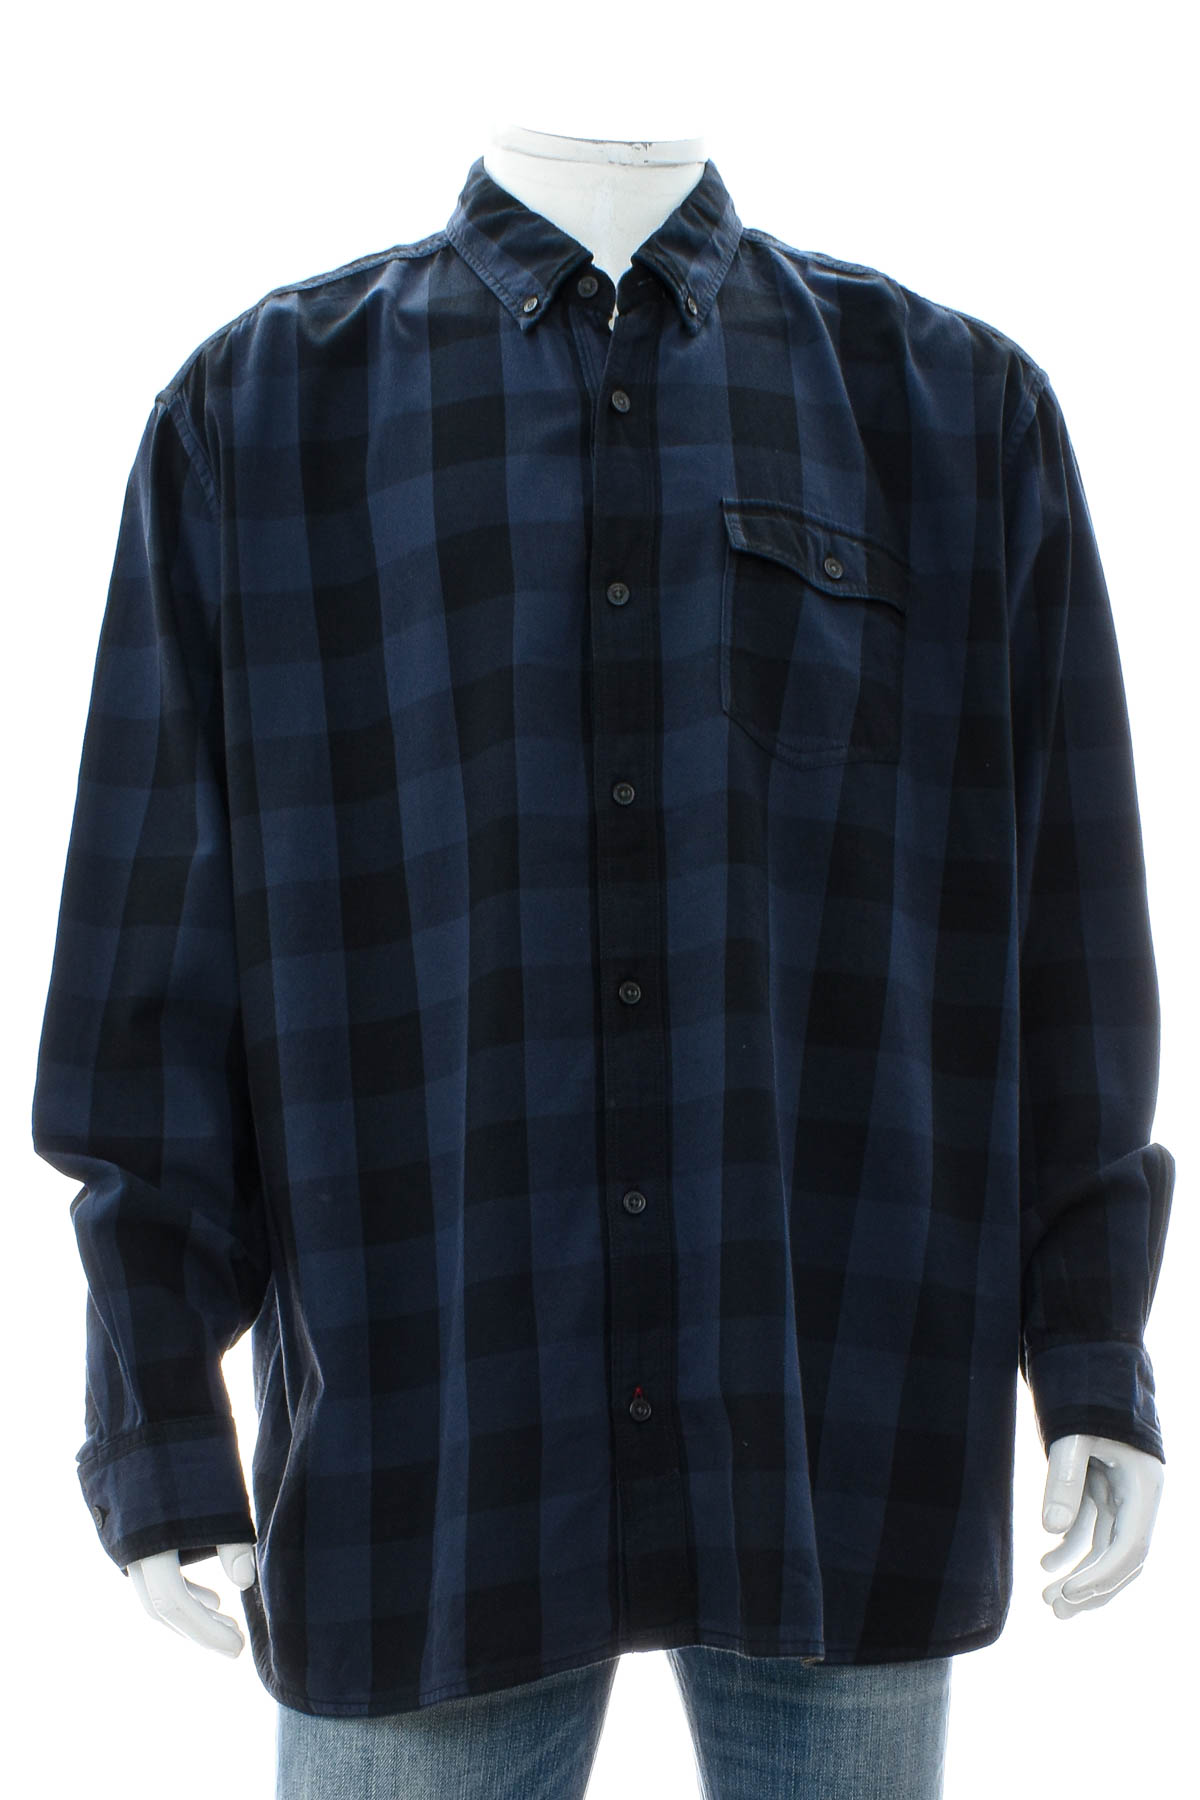 Men's shirt - S.Oliver - 0